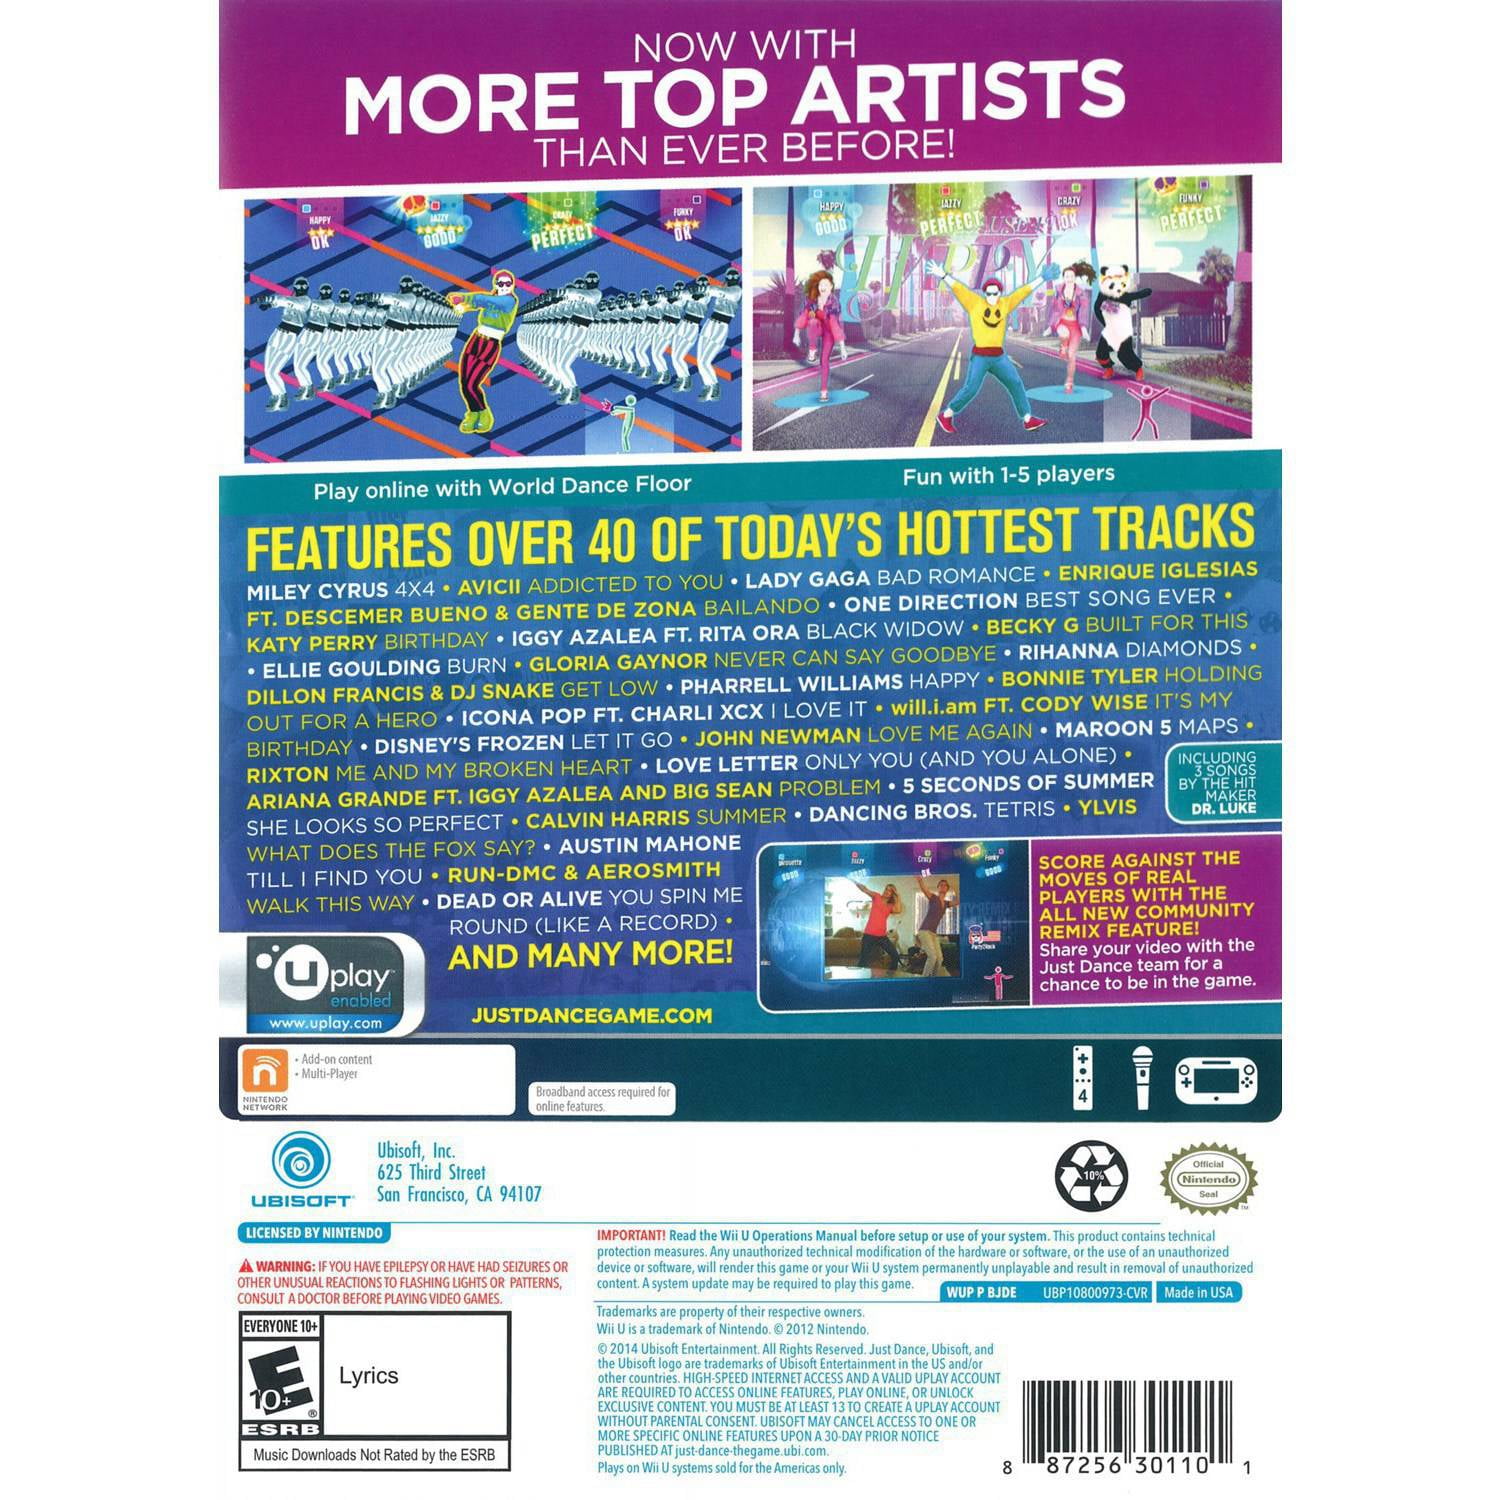 Just Dance 2015 Ubisoft Nintendo Wii U 887256301101 Walmart - furky roblox download